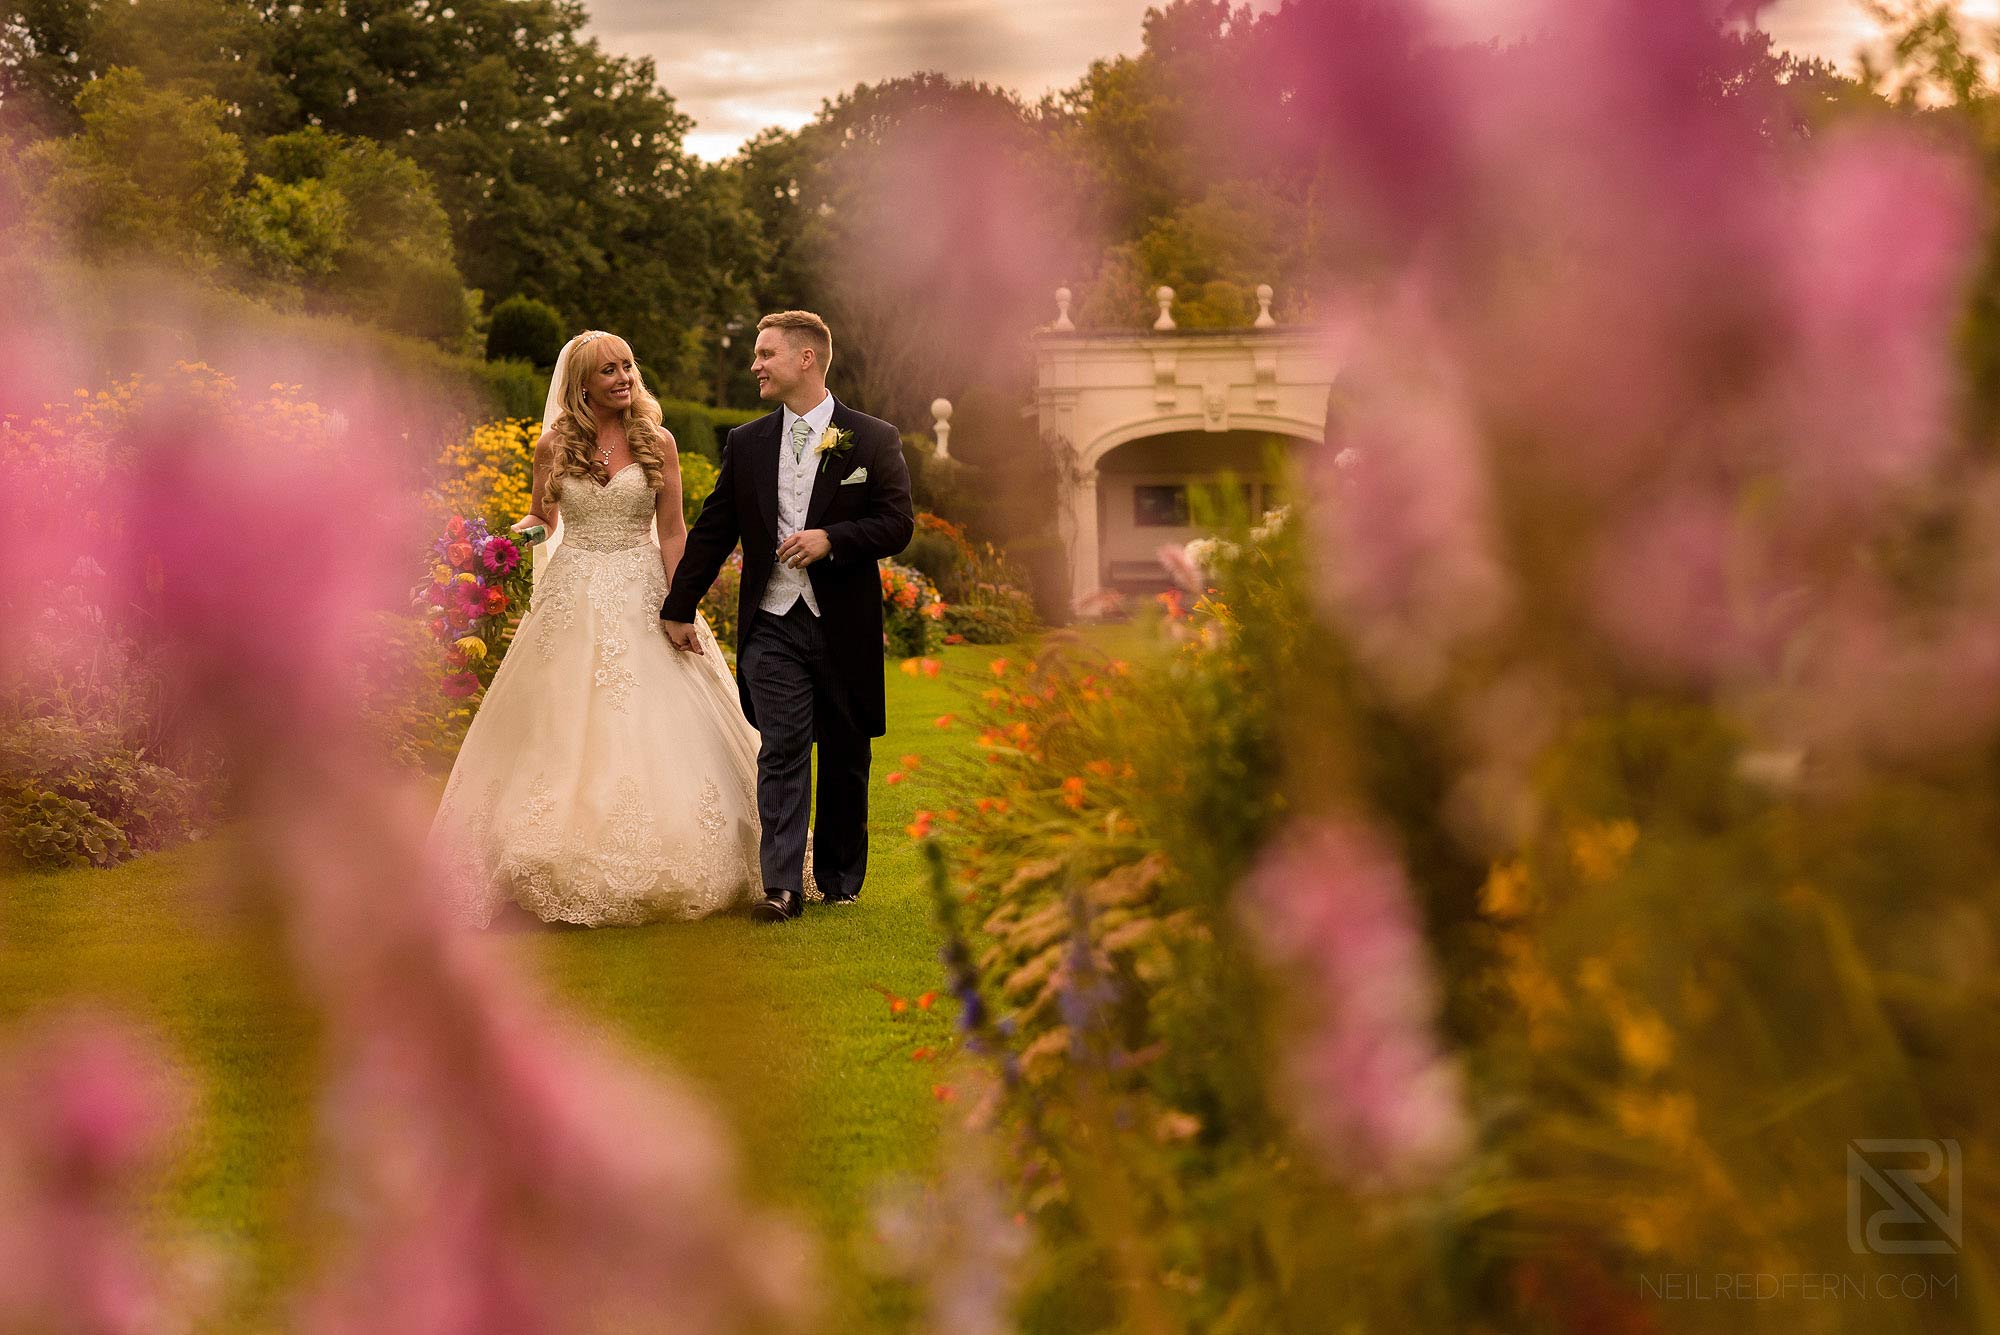 newlyweds walking through Arley Hall gardens